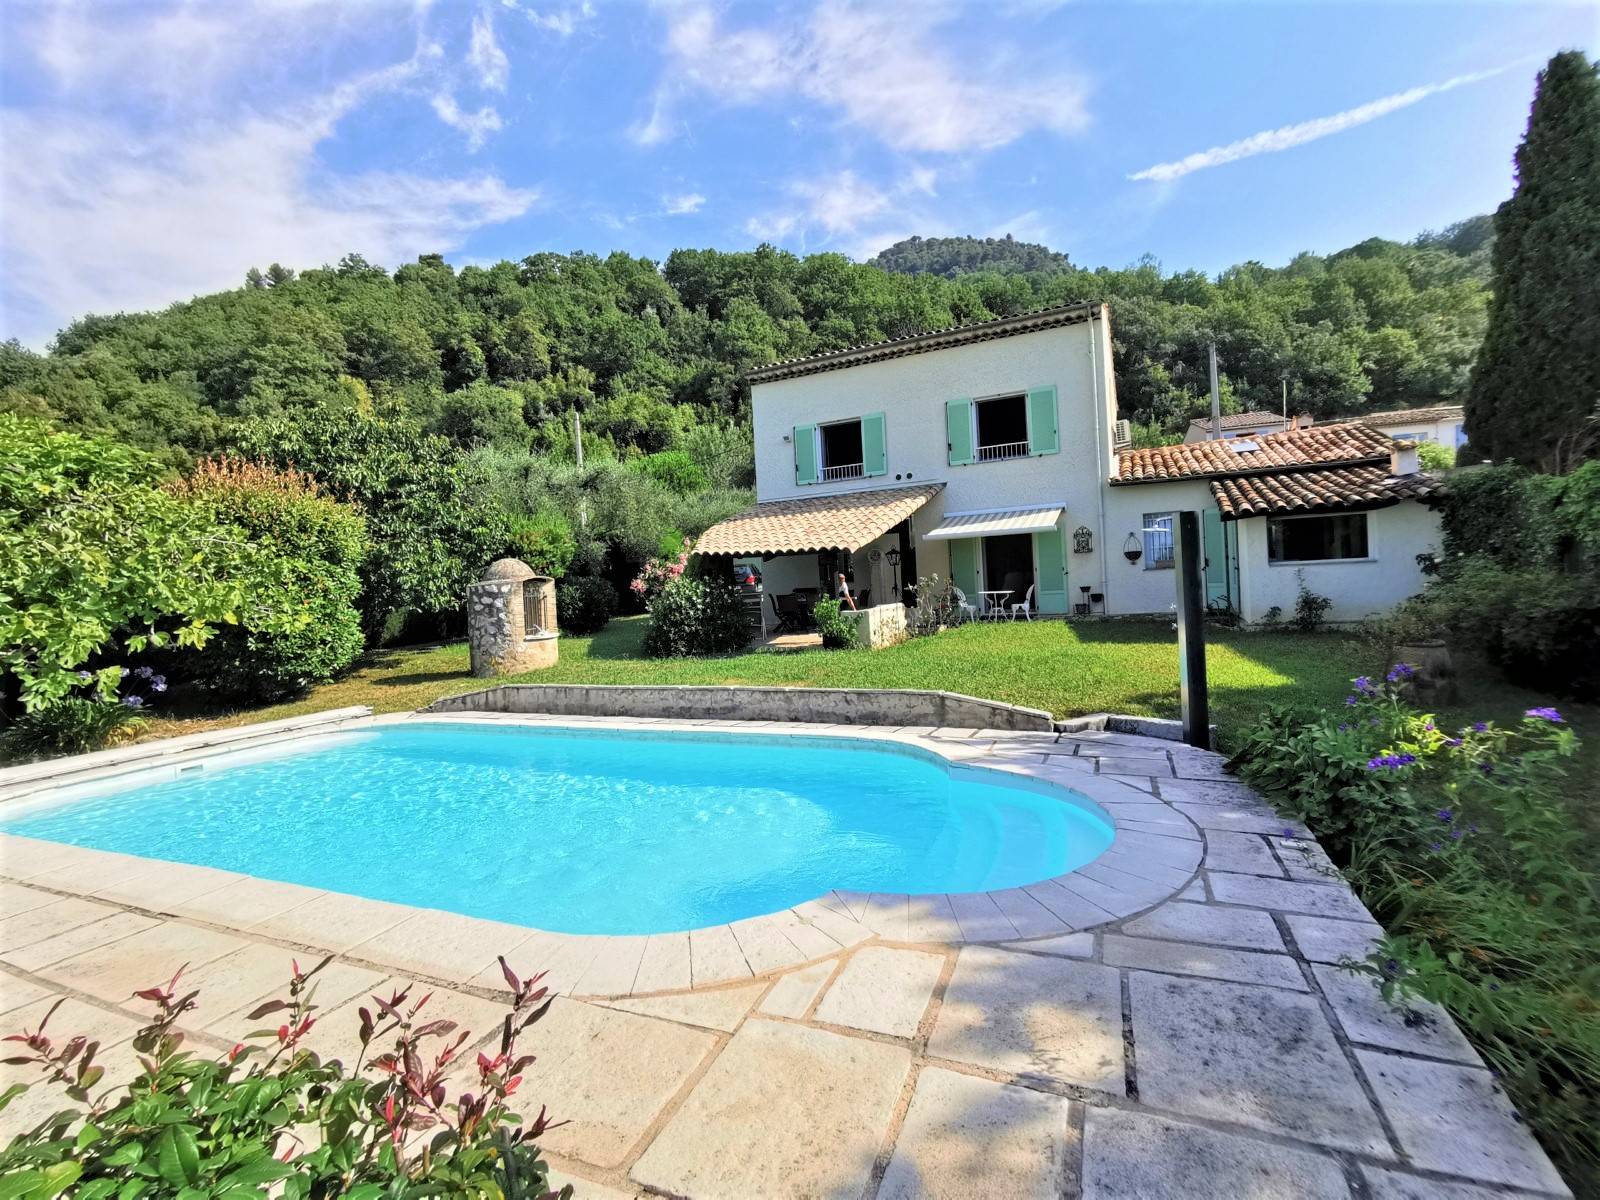 Villa en VIAGER OCCUPE à VENCE (dans les Alpes-Maritimes) avec piscine